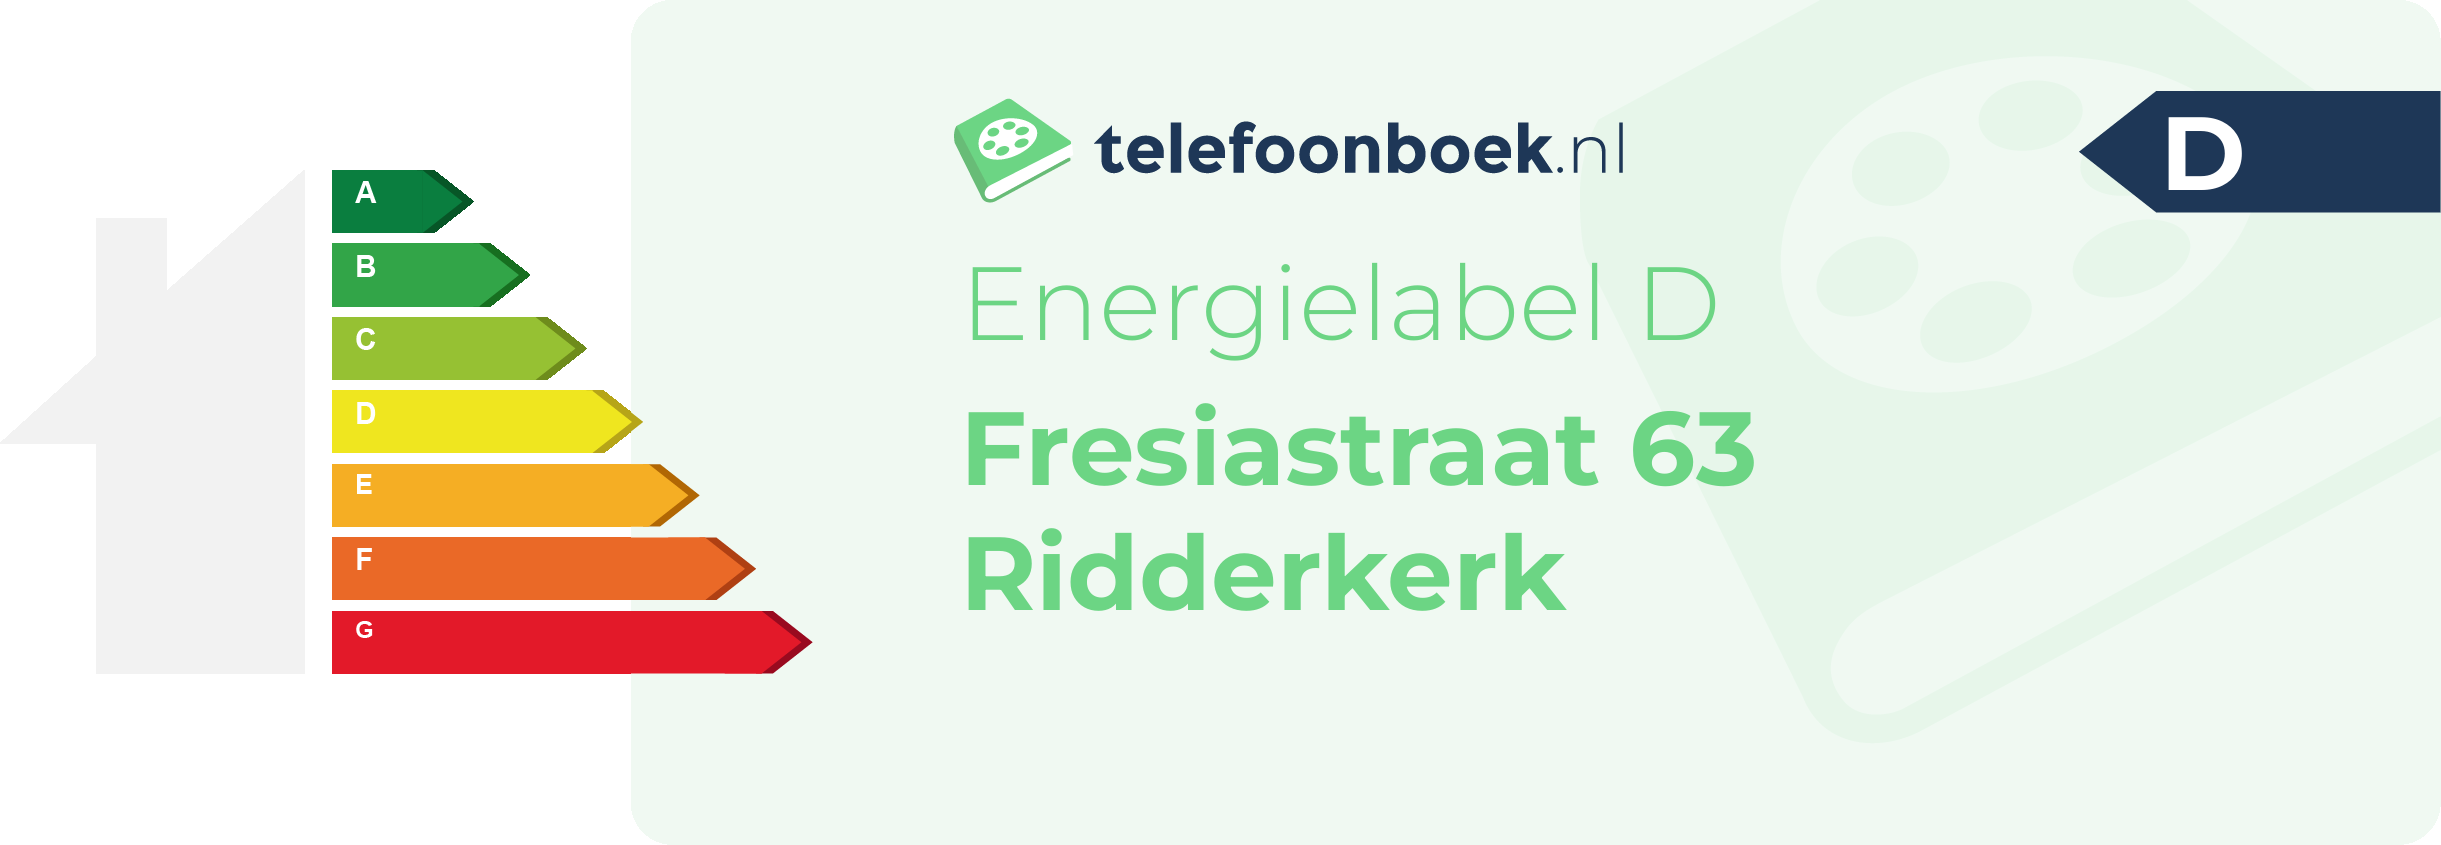 Energielabel Fresiastraat 63 Ridderkerk